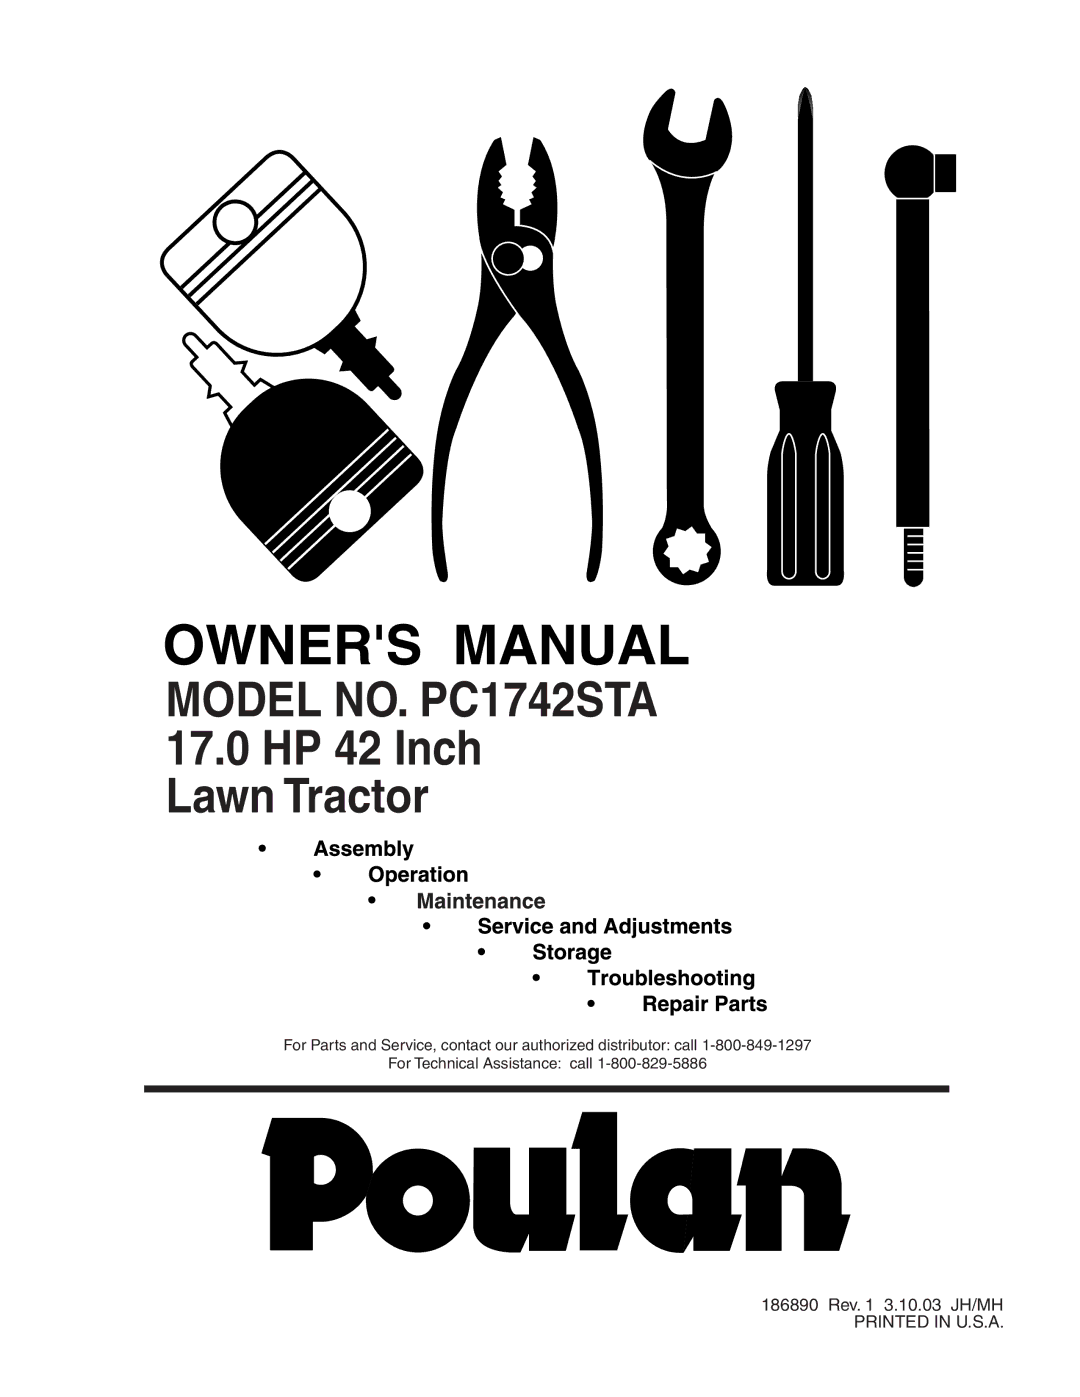 Poulan 186890, 954570772 manual Model NO. PC1742STA 